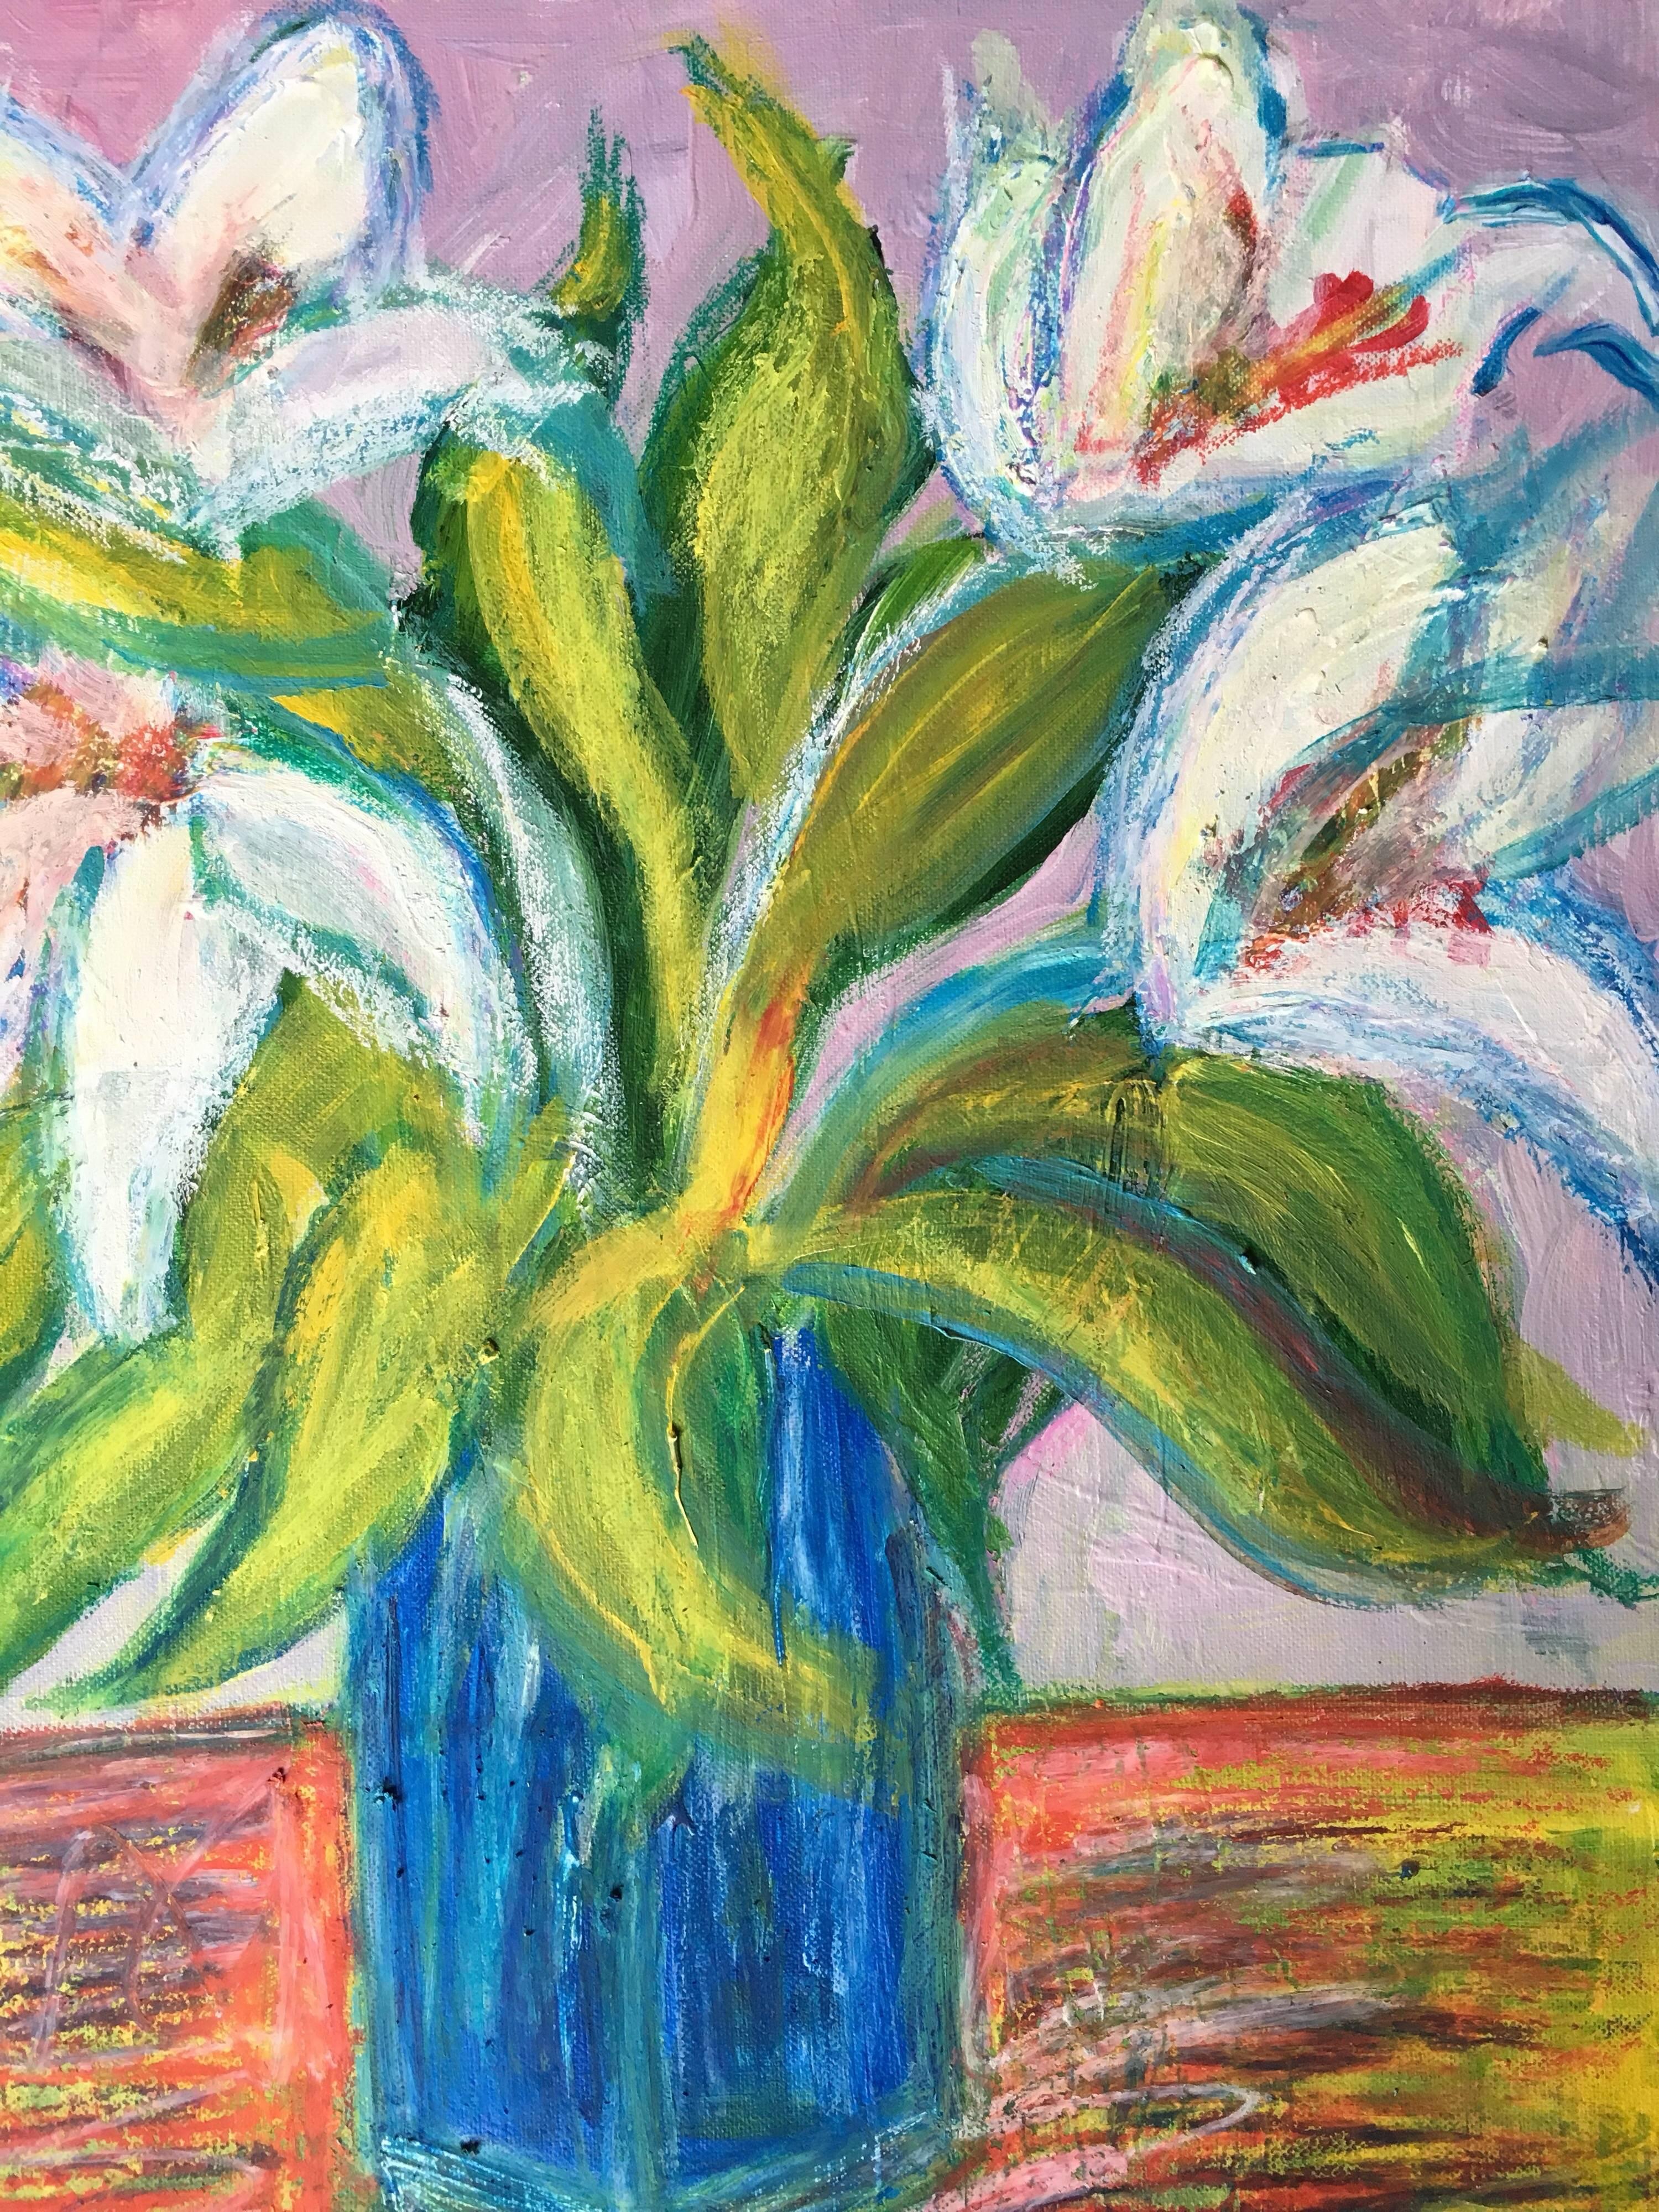 Lilien in einer blauen Vase, impressionistisches Ölgemälde von Blumen (Braun), Landscape Painting, von Pamela Cawley